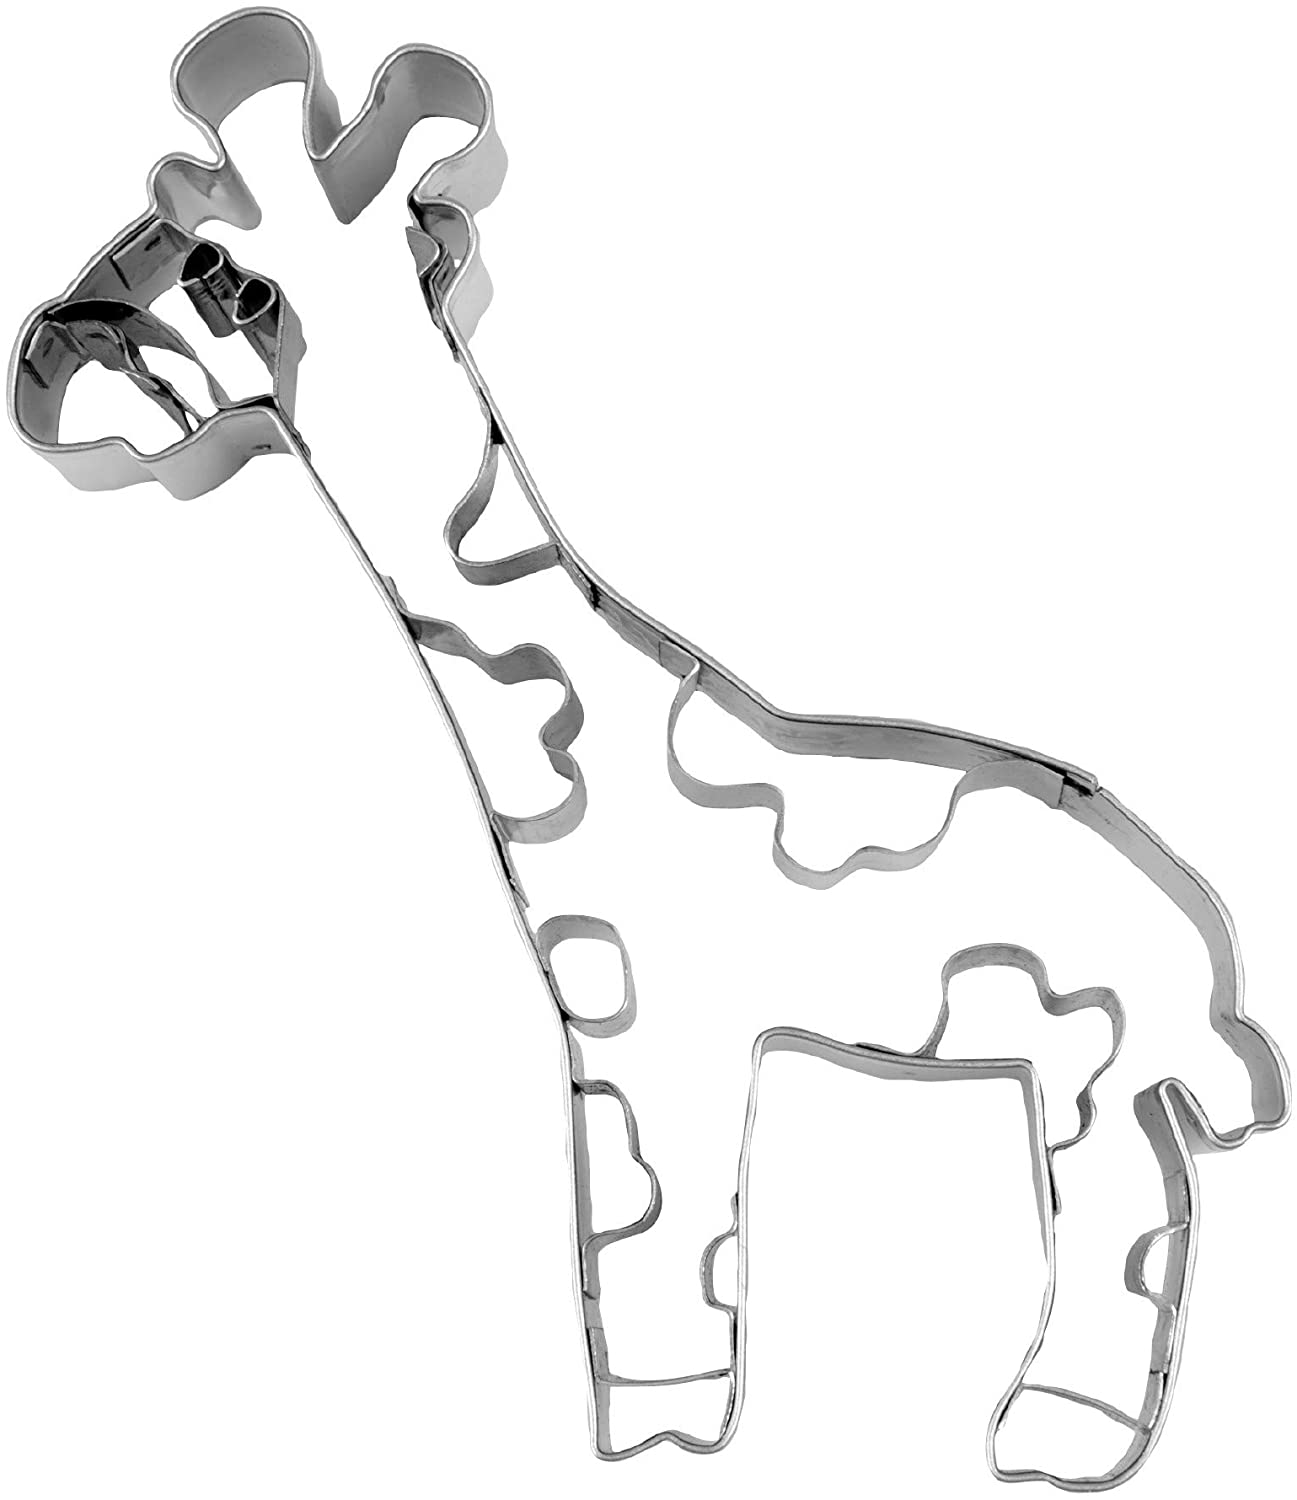 Keksausstecher Giraffe, 10,5 cm, Edelstahl Präge-Ausstechforn